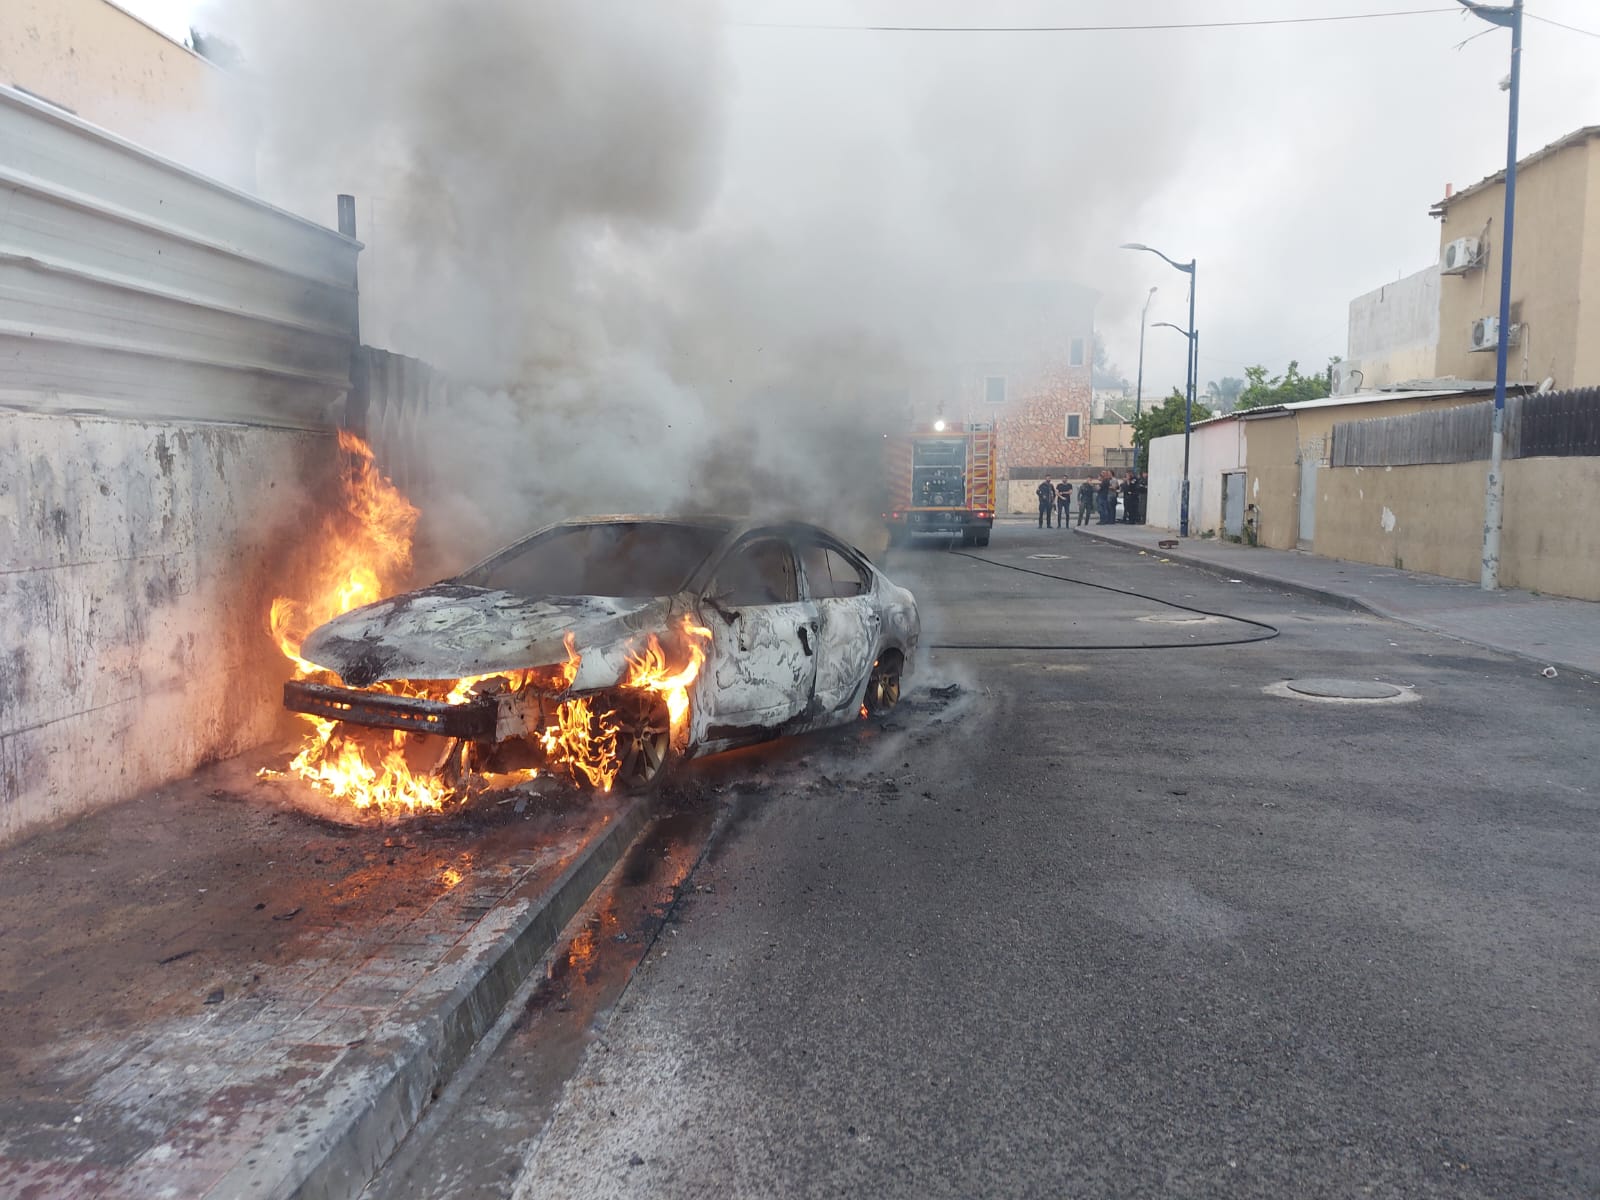  اللد: حريق في سيارة دون وقوع اصابات